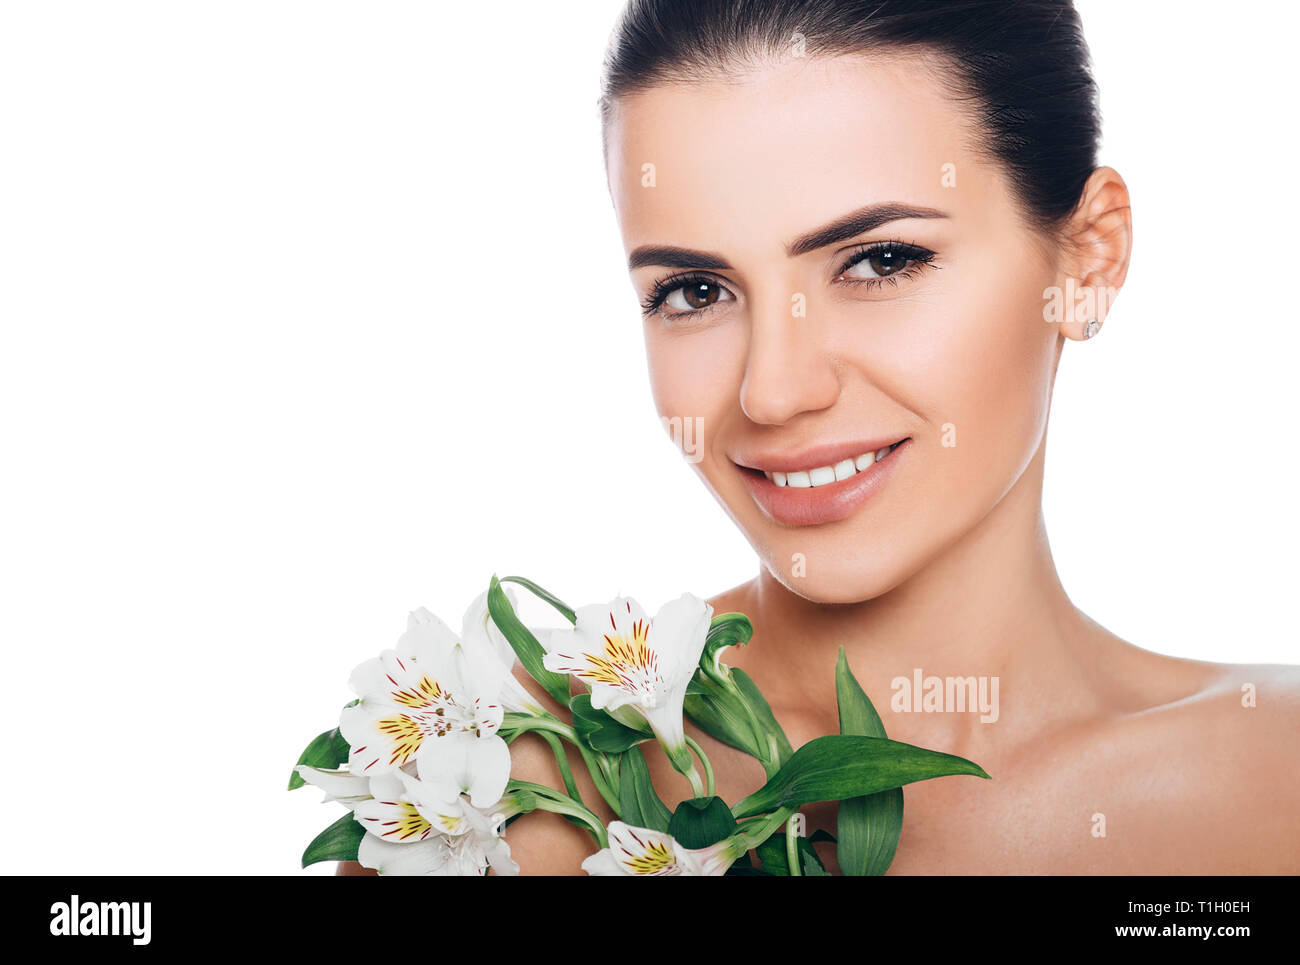 Belleza retrato de mujer sonriente con piel brillante fresco. Rostro perfecto, belleza natural Foto de stock